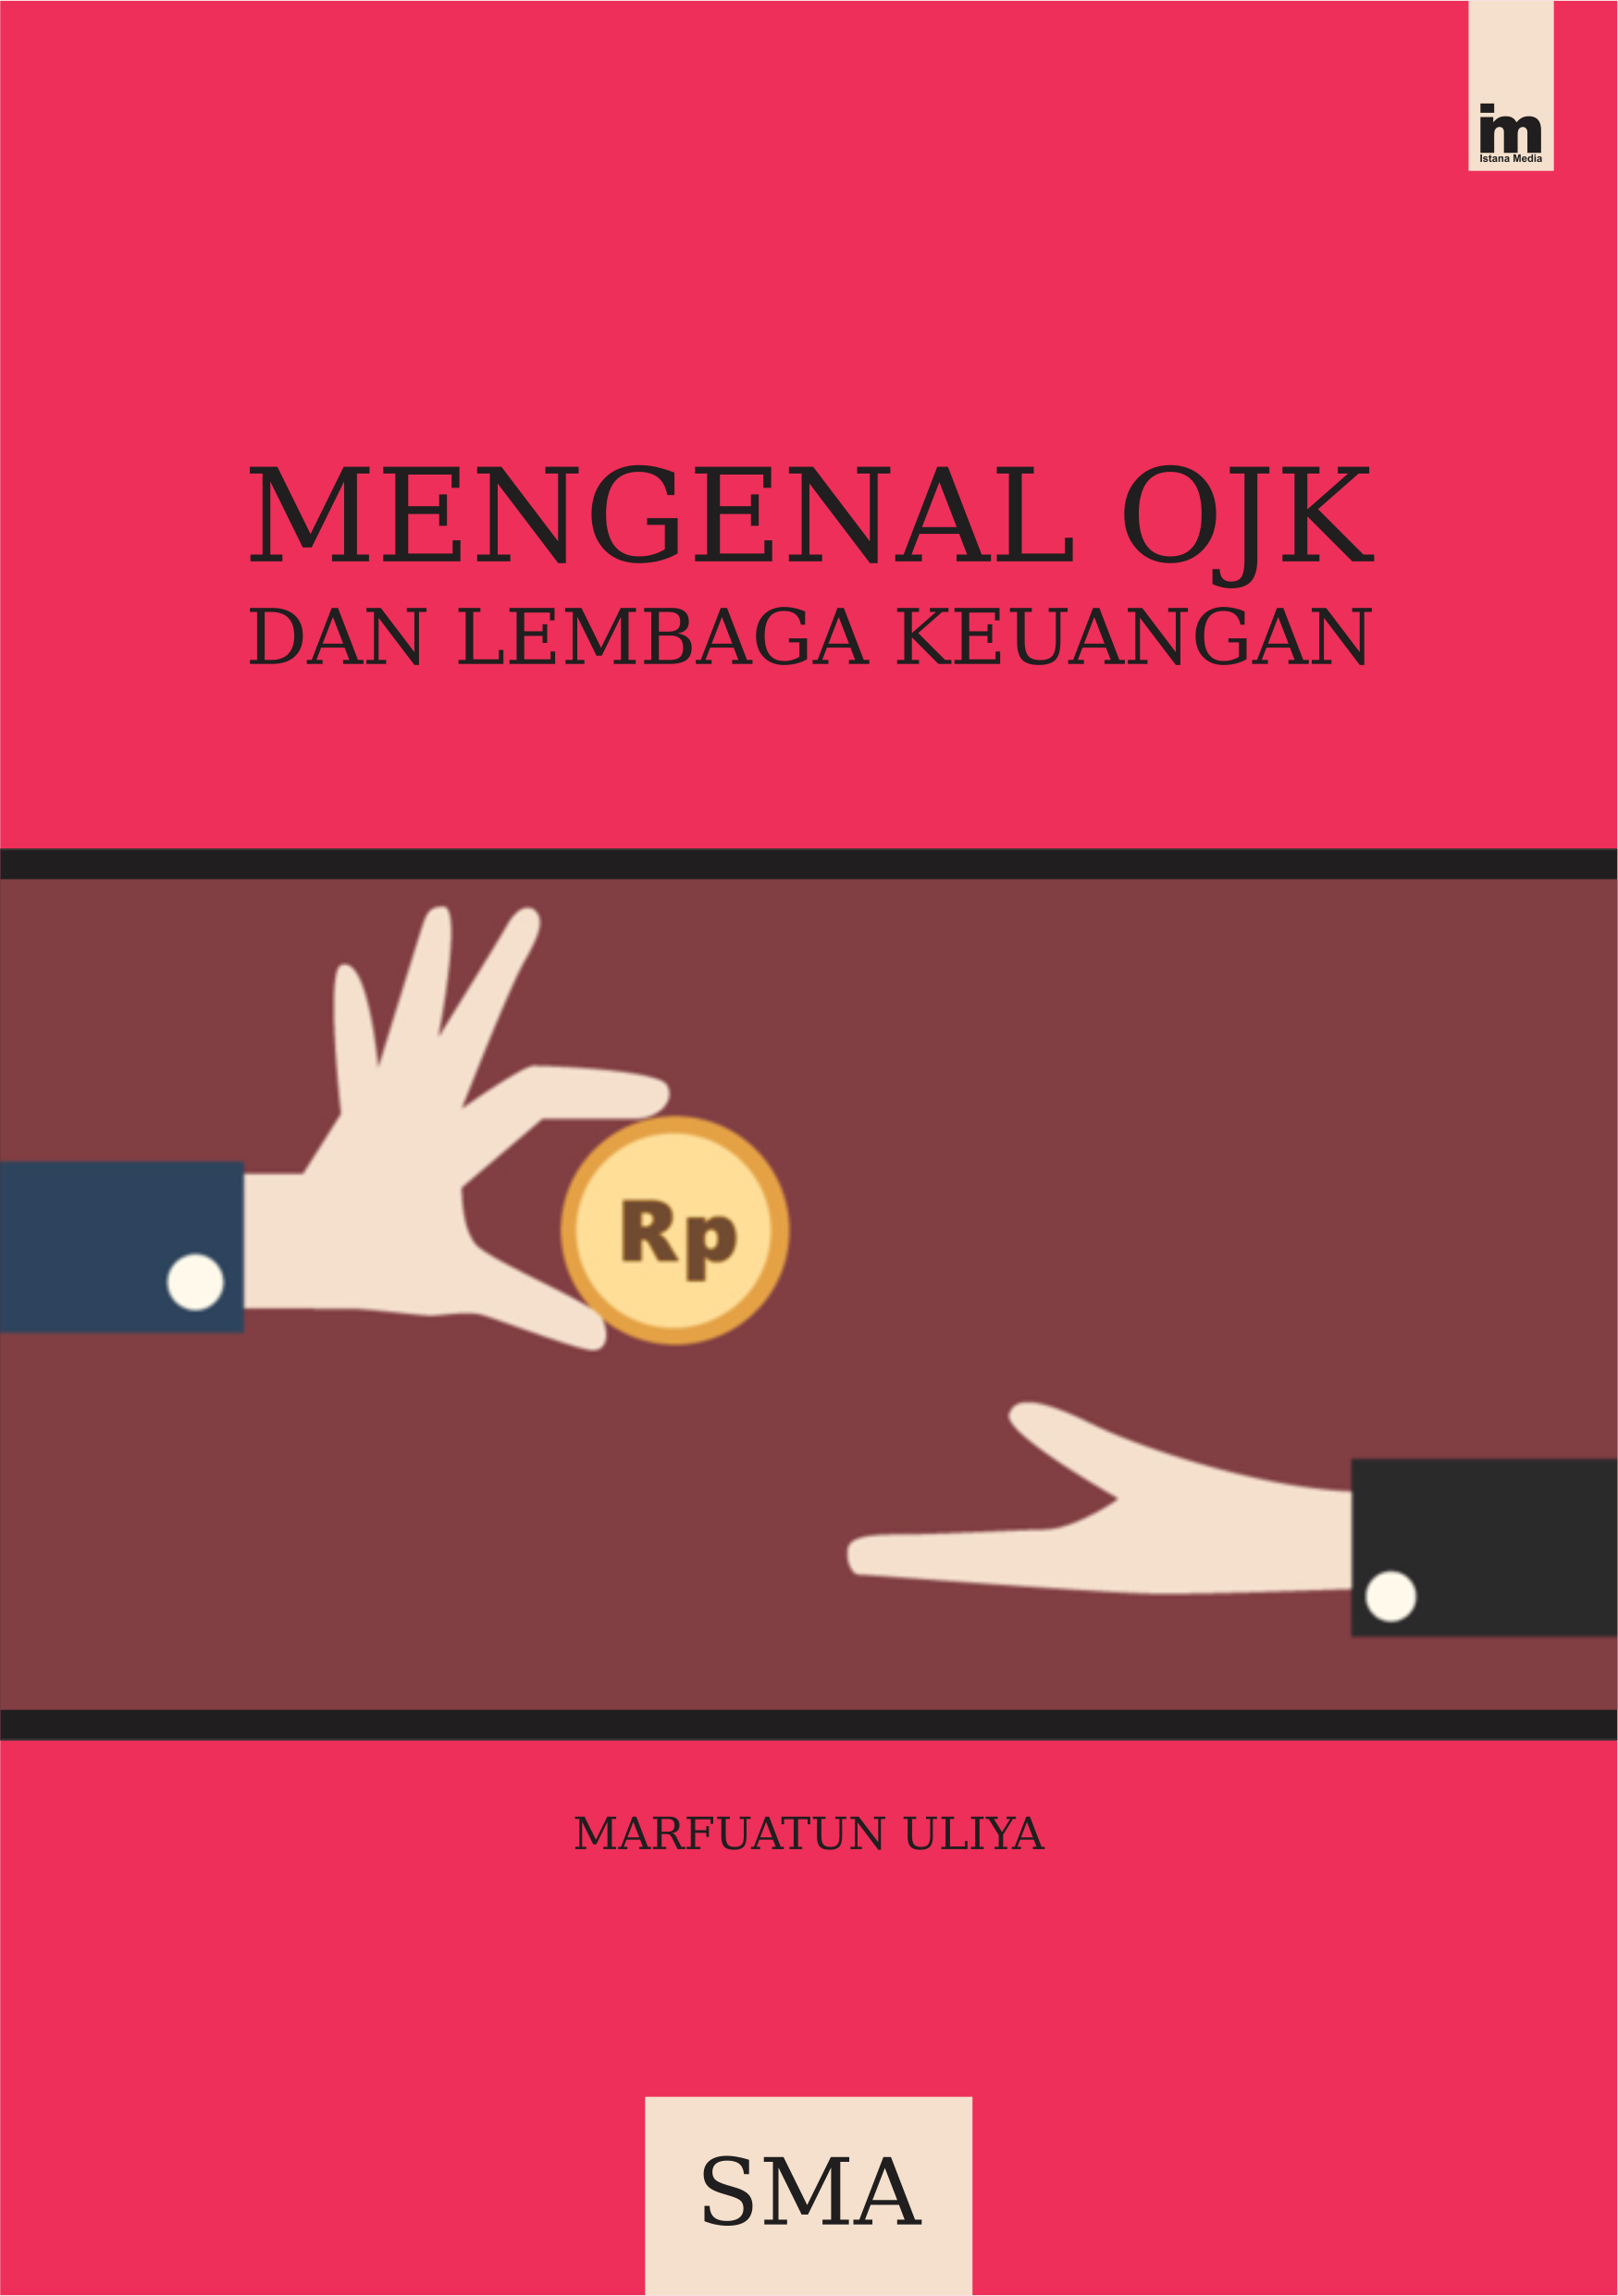 cover/(29-11-2019)mengenal-ojk-dan-lembaga-keuangan.png